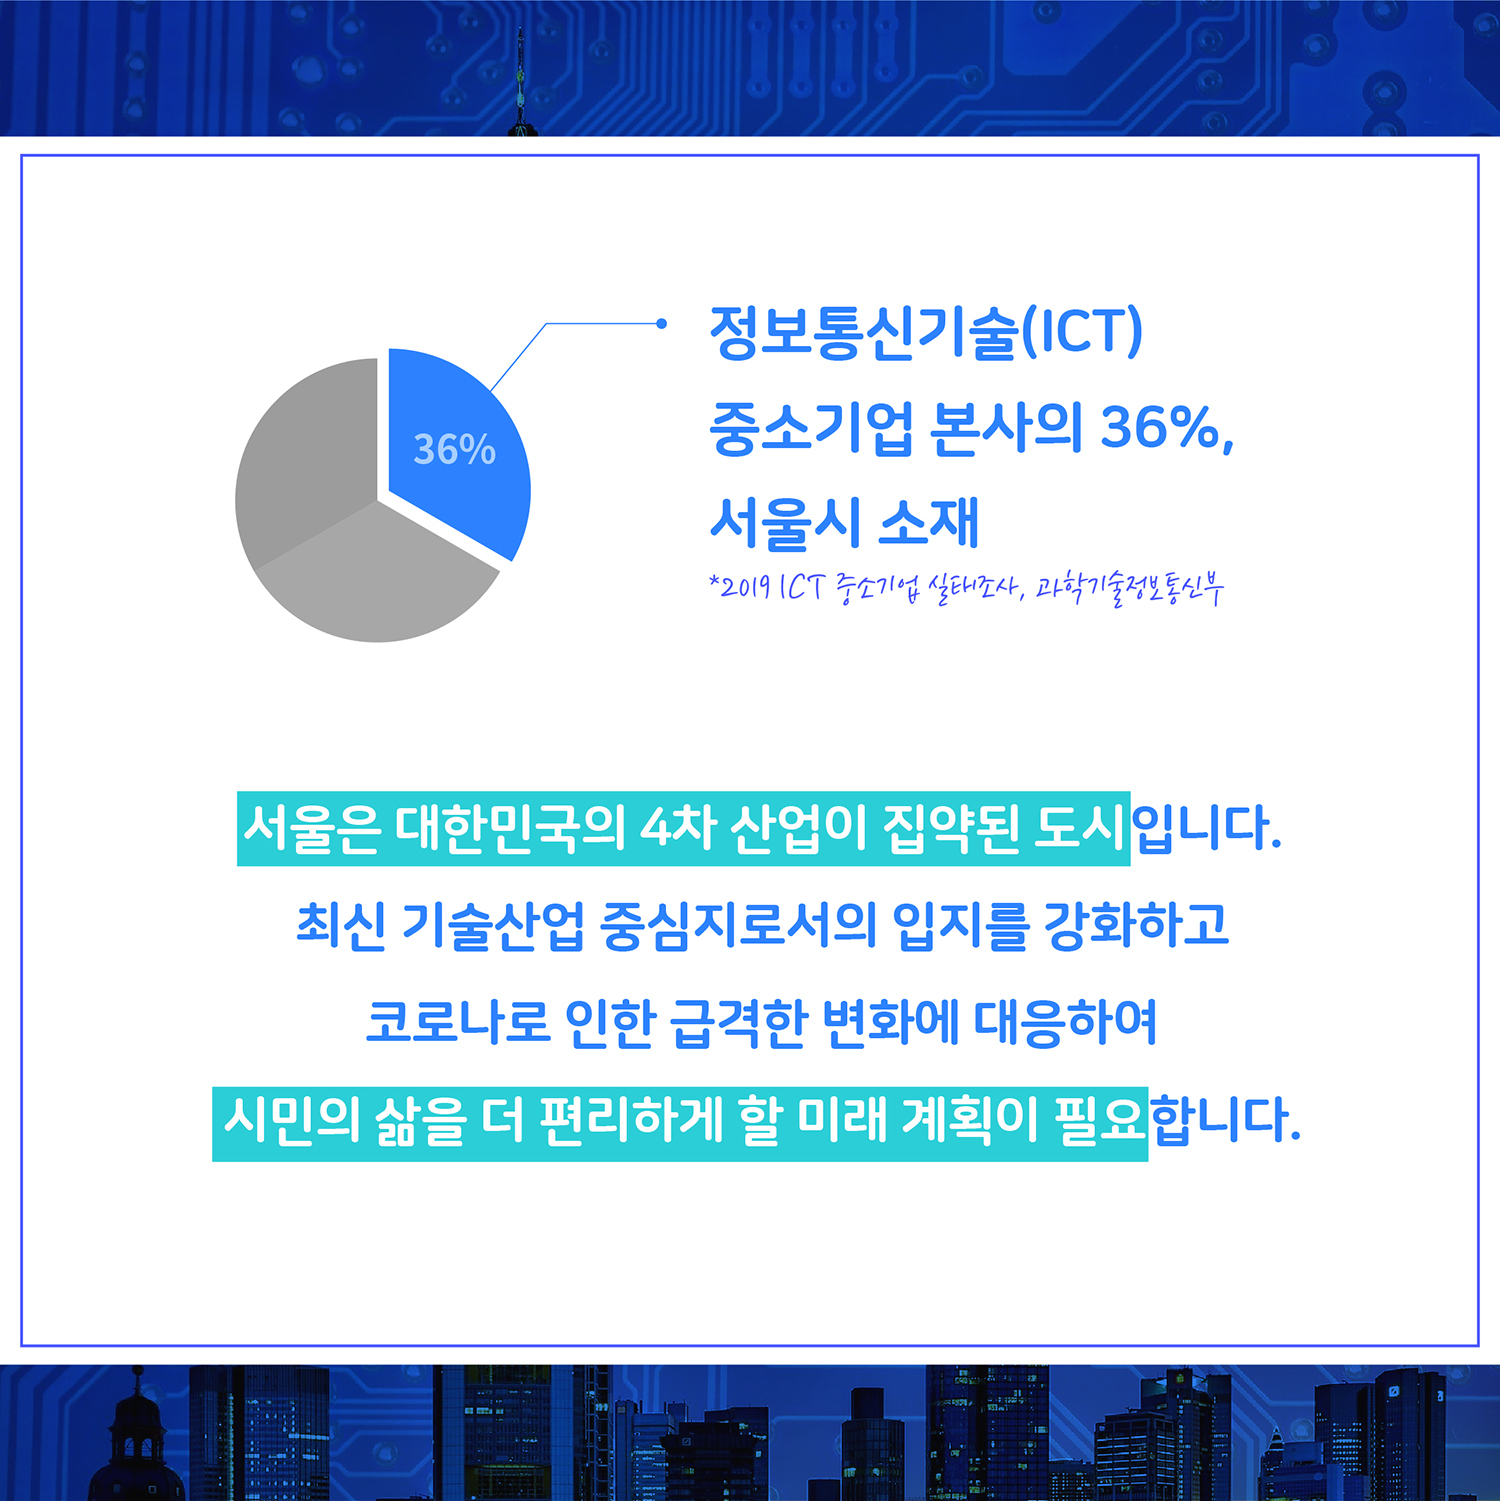 서울은 대한민국의 4차 산업이 집약된 도시입니다. 최신 기술산업 중심지로서의 입지를 강화하고 코로나로 인한 급격한 변화에 대응하여 시민의 삶을 더 편리하게 할 미래 계획이 필요합니다. 정보통신기술(ICT) 중소기업 본사의 36%, 서울시 소재 *2019 ICT 중소기업 실태조사, 과학기술정보통신부